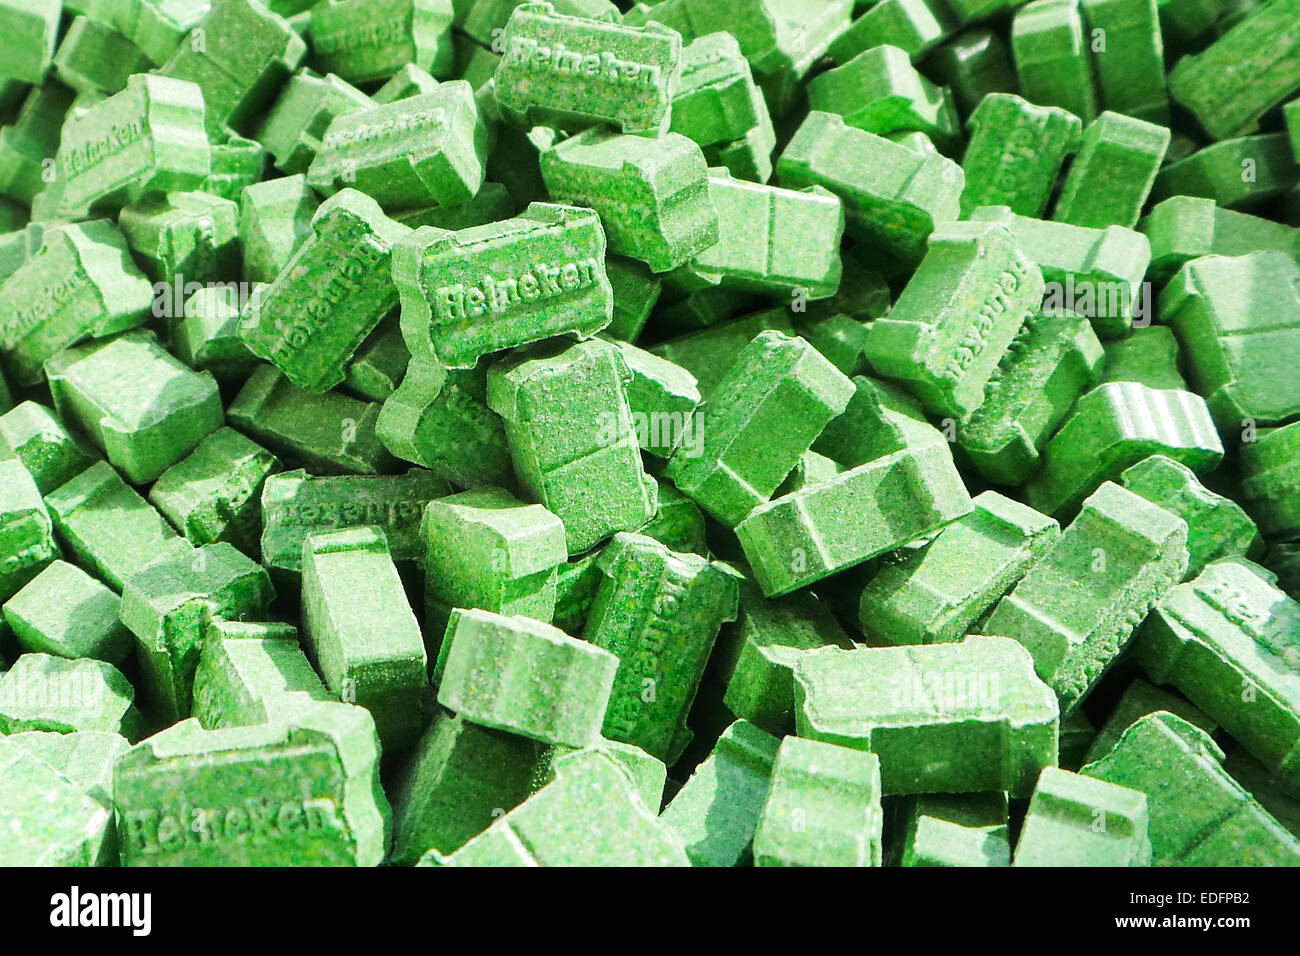 'Verde' Heineken pastillas de éxtasis que contengan entre 200-220mg de MDMA (3,4-metilenodioxi-N-metilanfetamina). Foto de stock